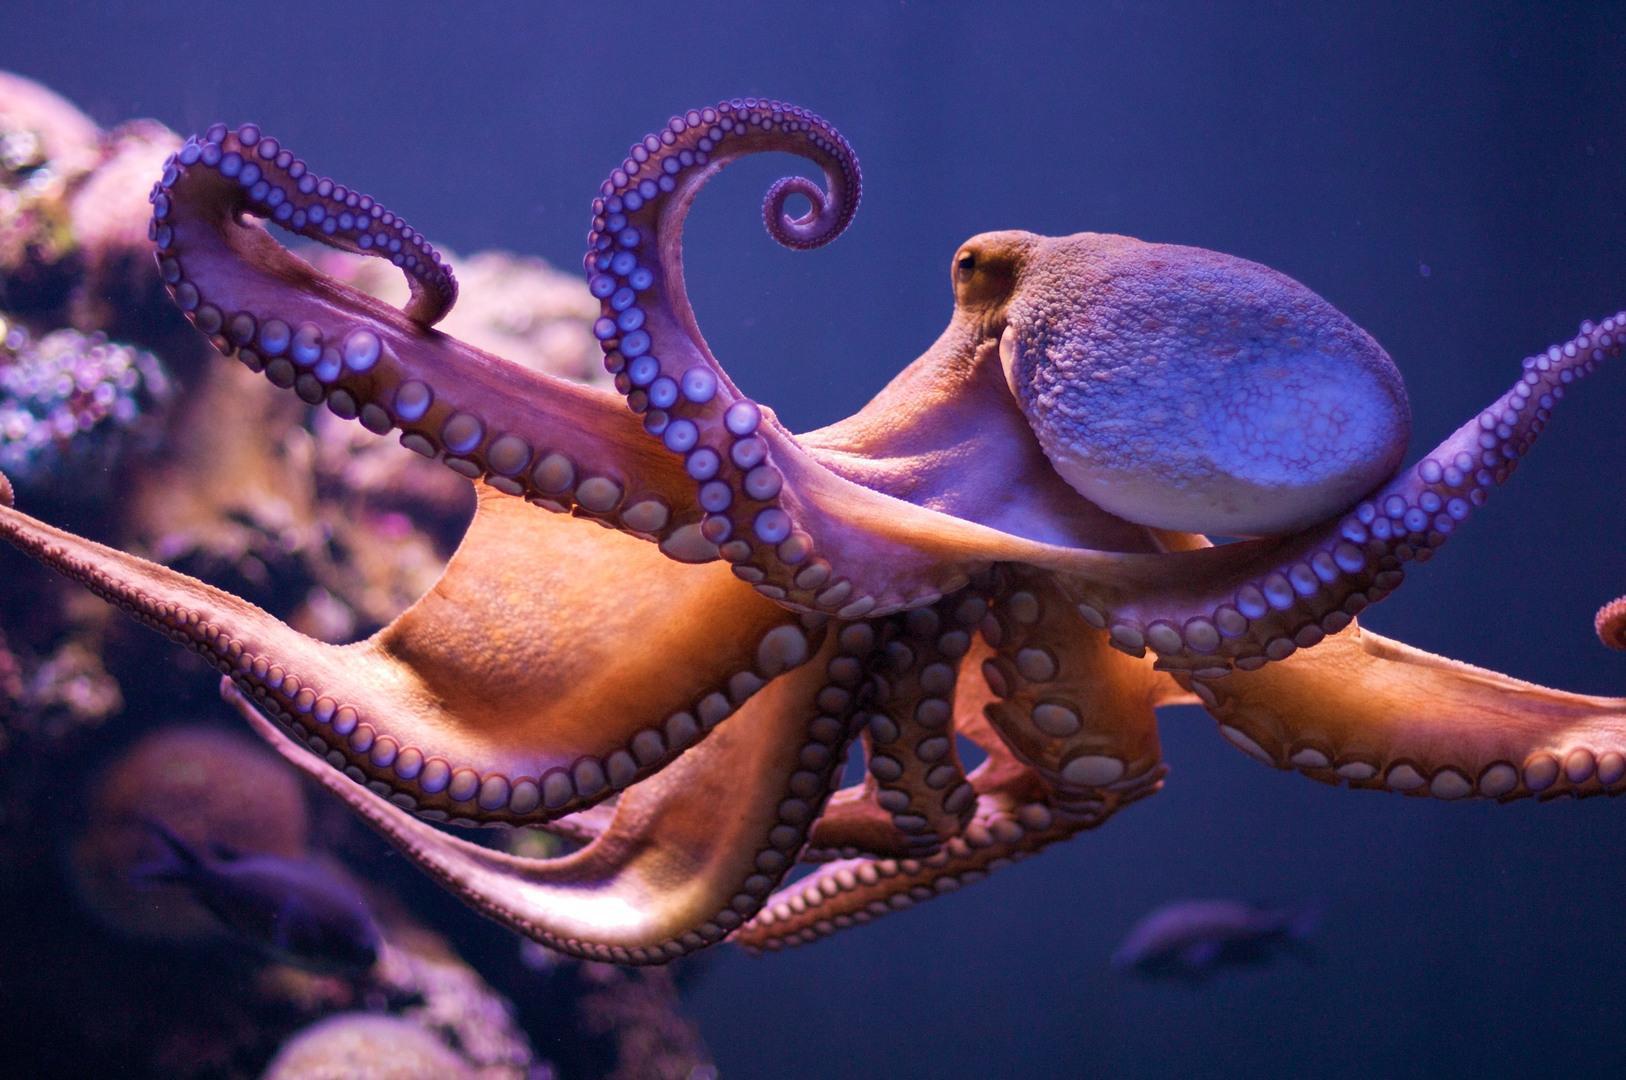 PHONE AMOLED  OCTOPUS Cute Octopus HD phone wallpaper  Pxfuel